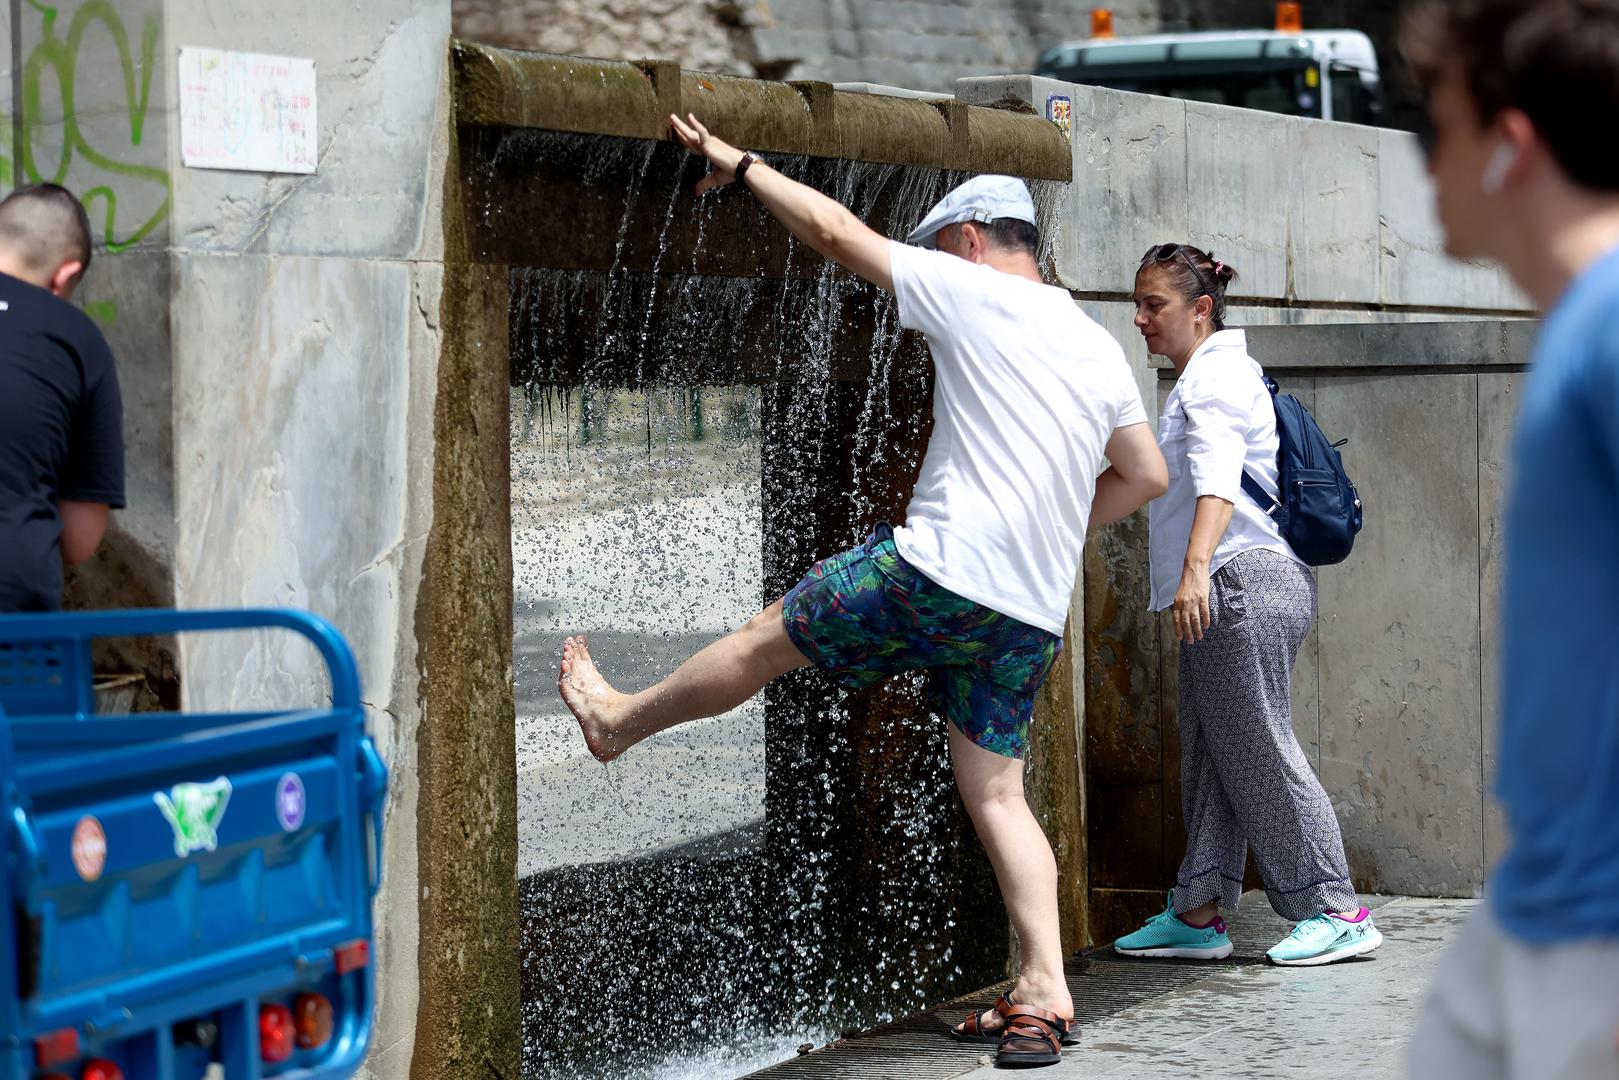 Fotografije donose prizore Splićana i turista kako se nose s toplinskim valom - od uživanja na plažama, preko rashlađenja u fontani do opuštanja u hladovini. 